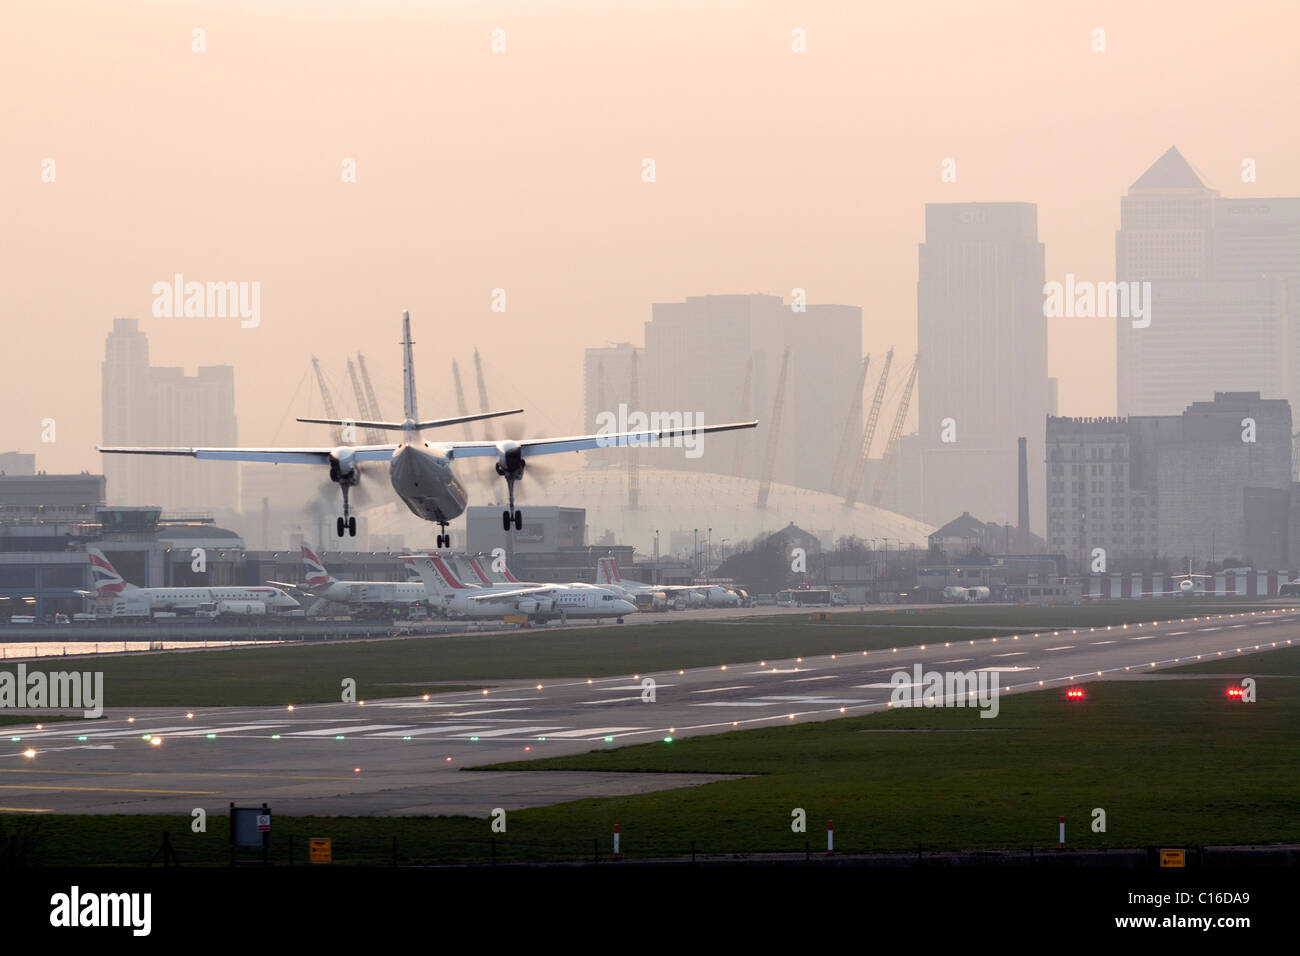 L'aéroport de London City - Docklands Banque D'Images